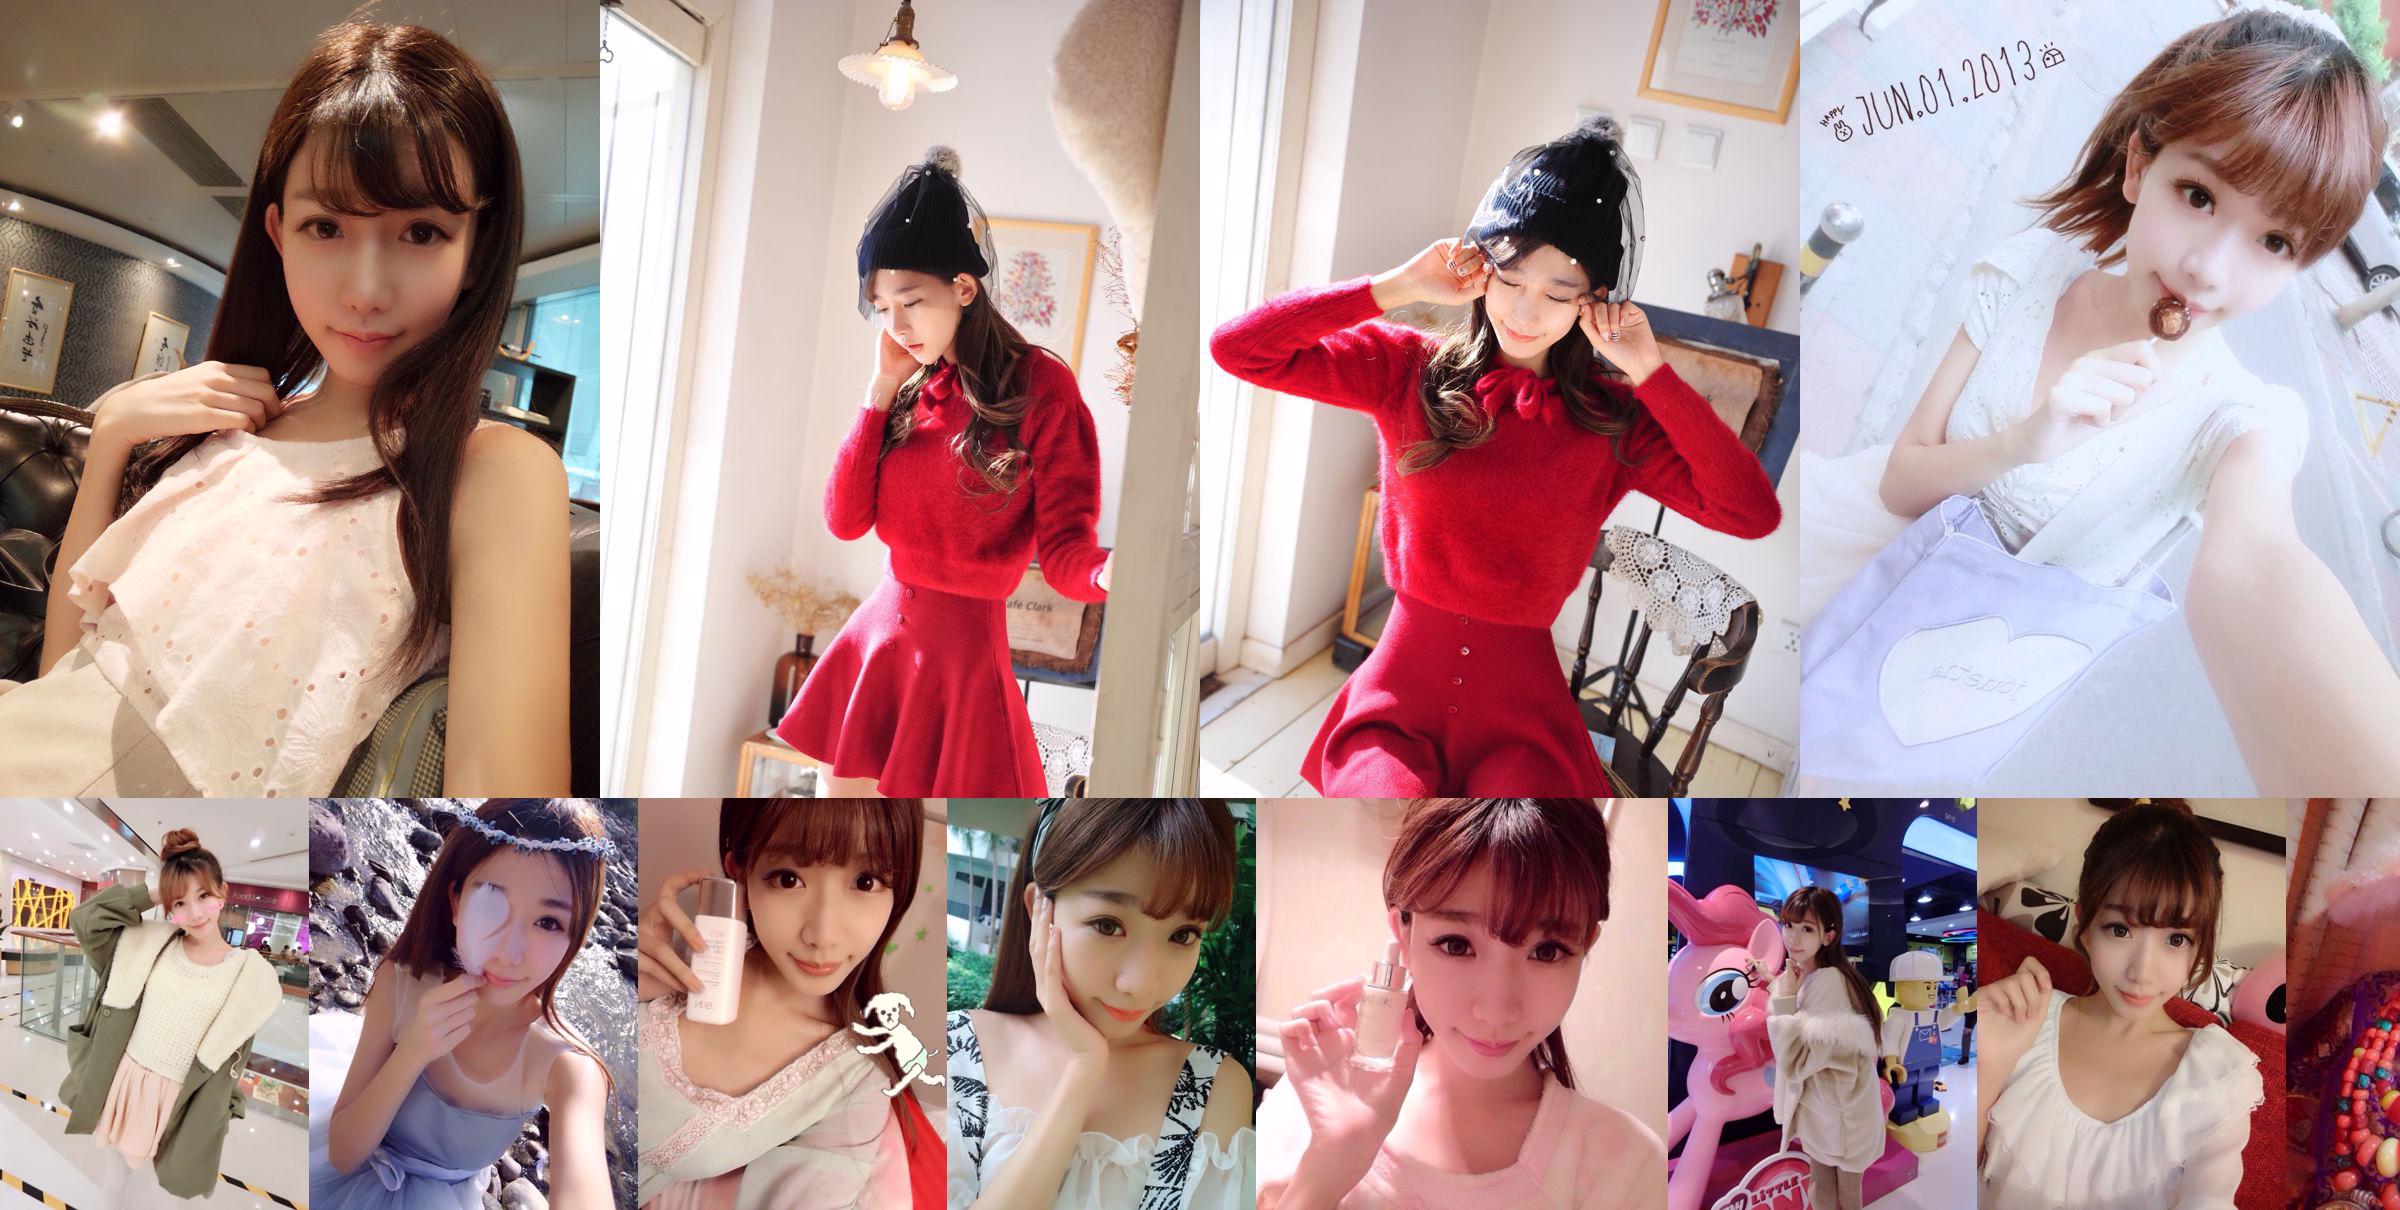 La sorella Taiwanese della celebrità di Internet Chen Xiao "Weibo Selfie Pictures" Parte 1 Raccolta di foto No.51ffff Pagina 49